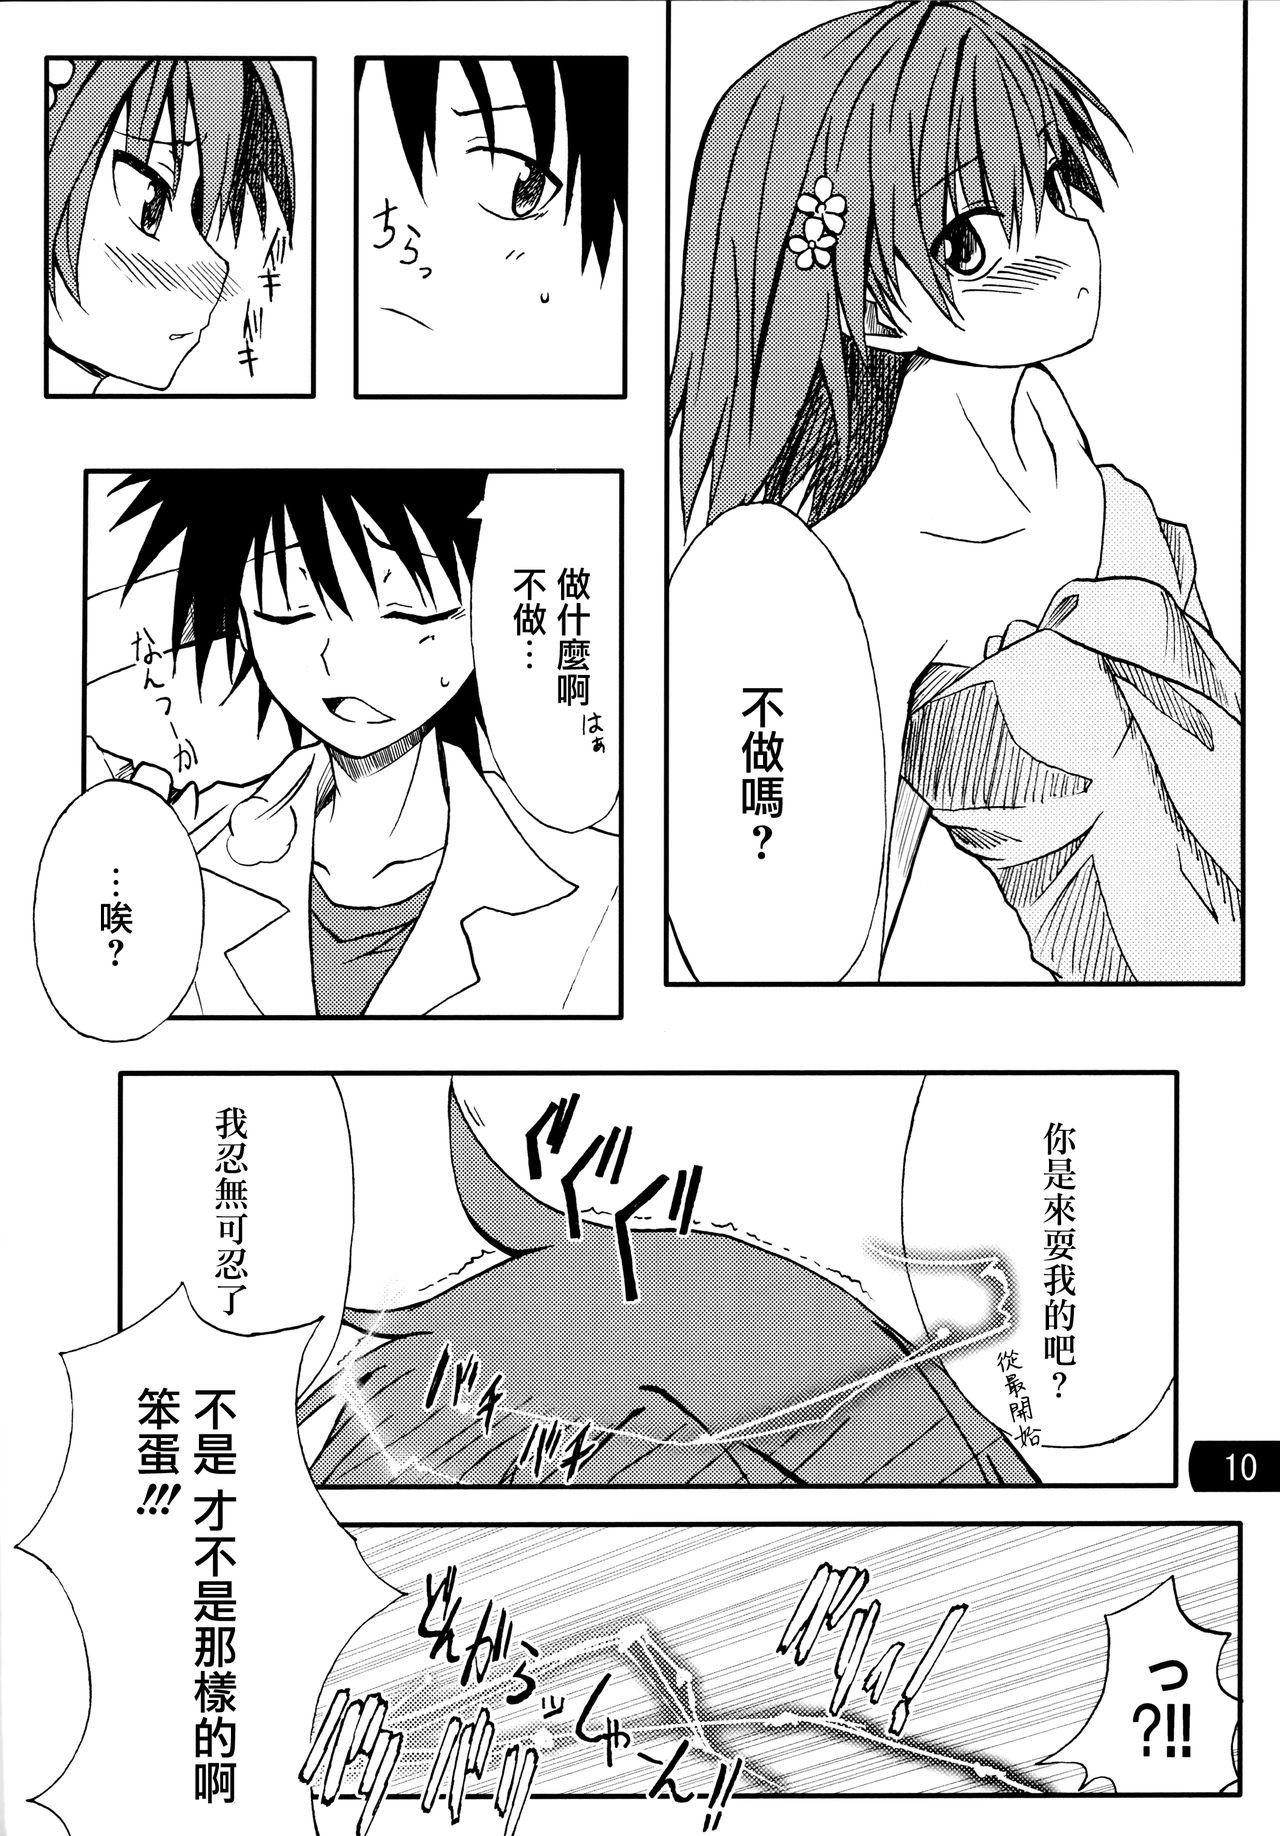 Close Toaru mousou no chou denji hon 02 - Toaru kagaku no railgun Bucetuda - Page 9